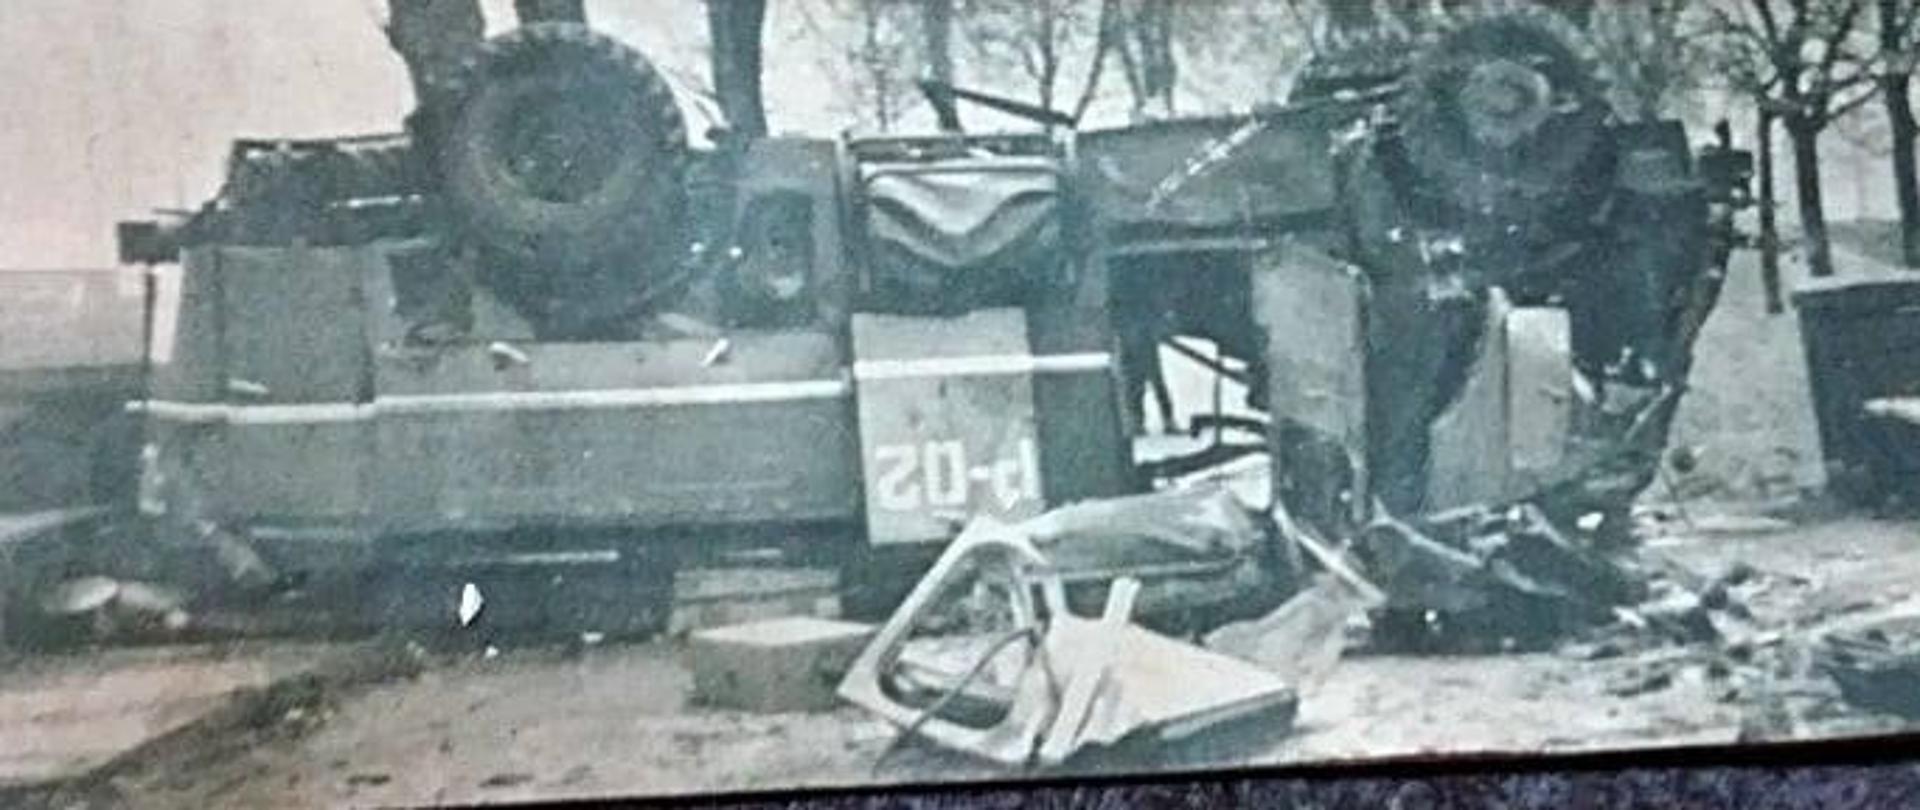 Zdjęcie z wypadku przedstawiające rozbity samochód pożarniczy znajdujący się w poprzek drogi, w pozycji kołami do góry. 